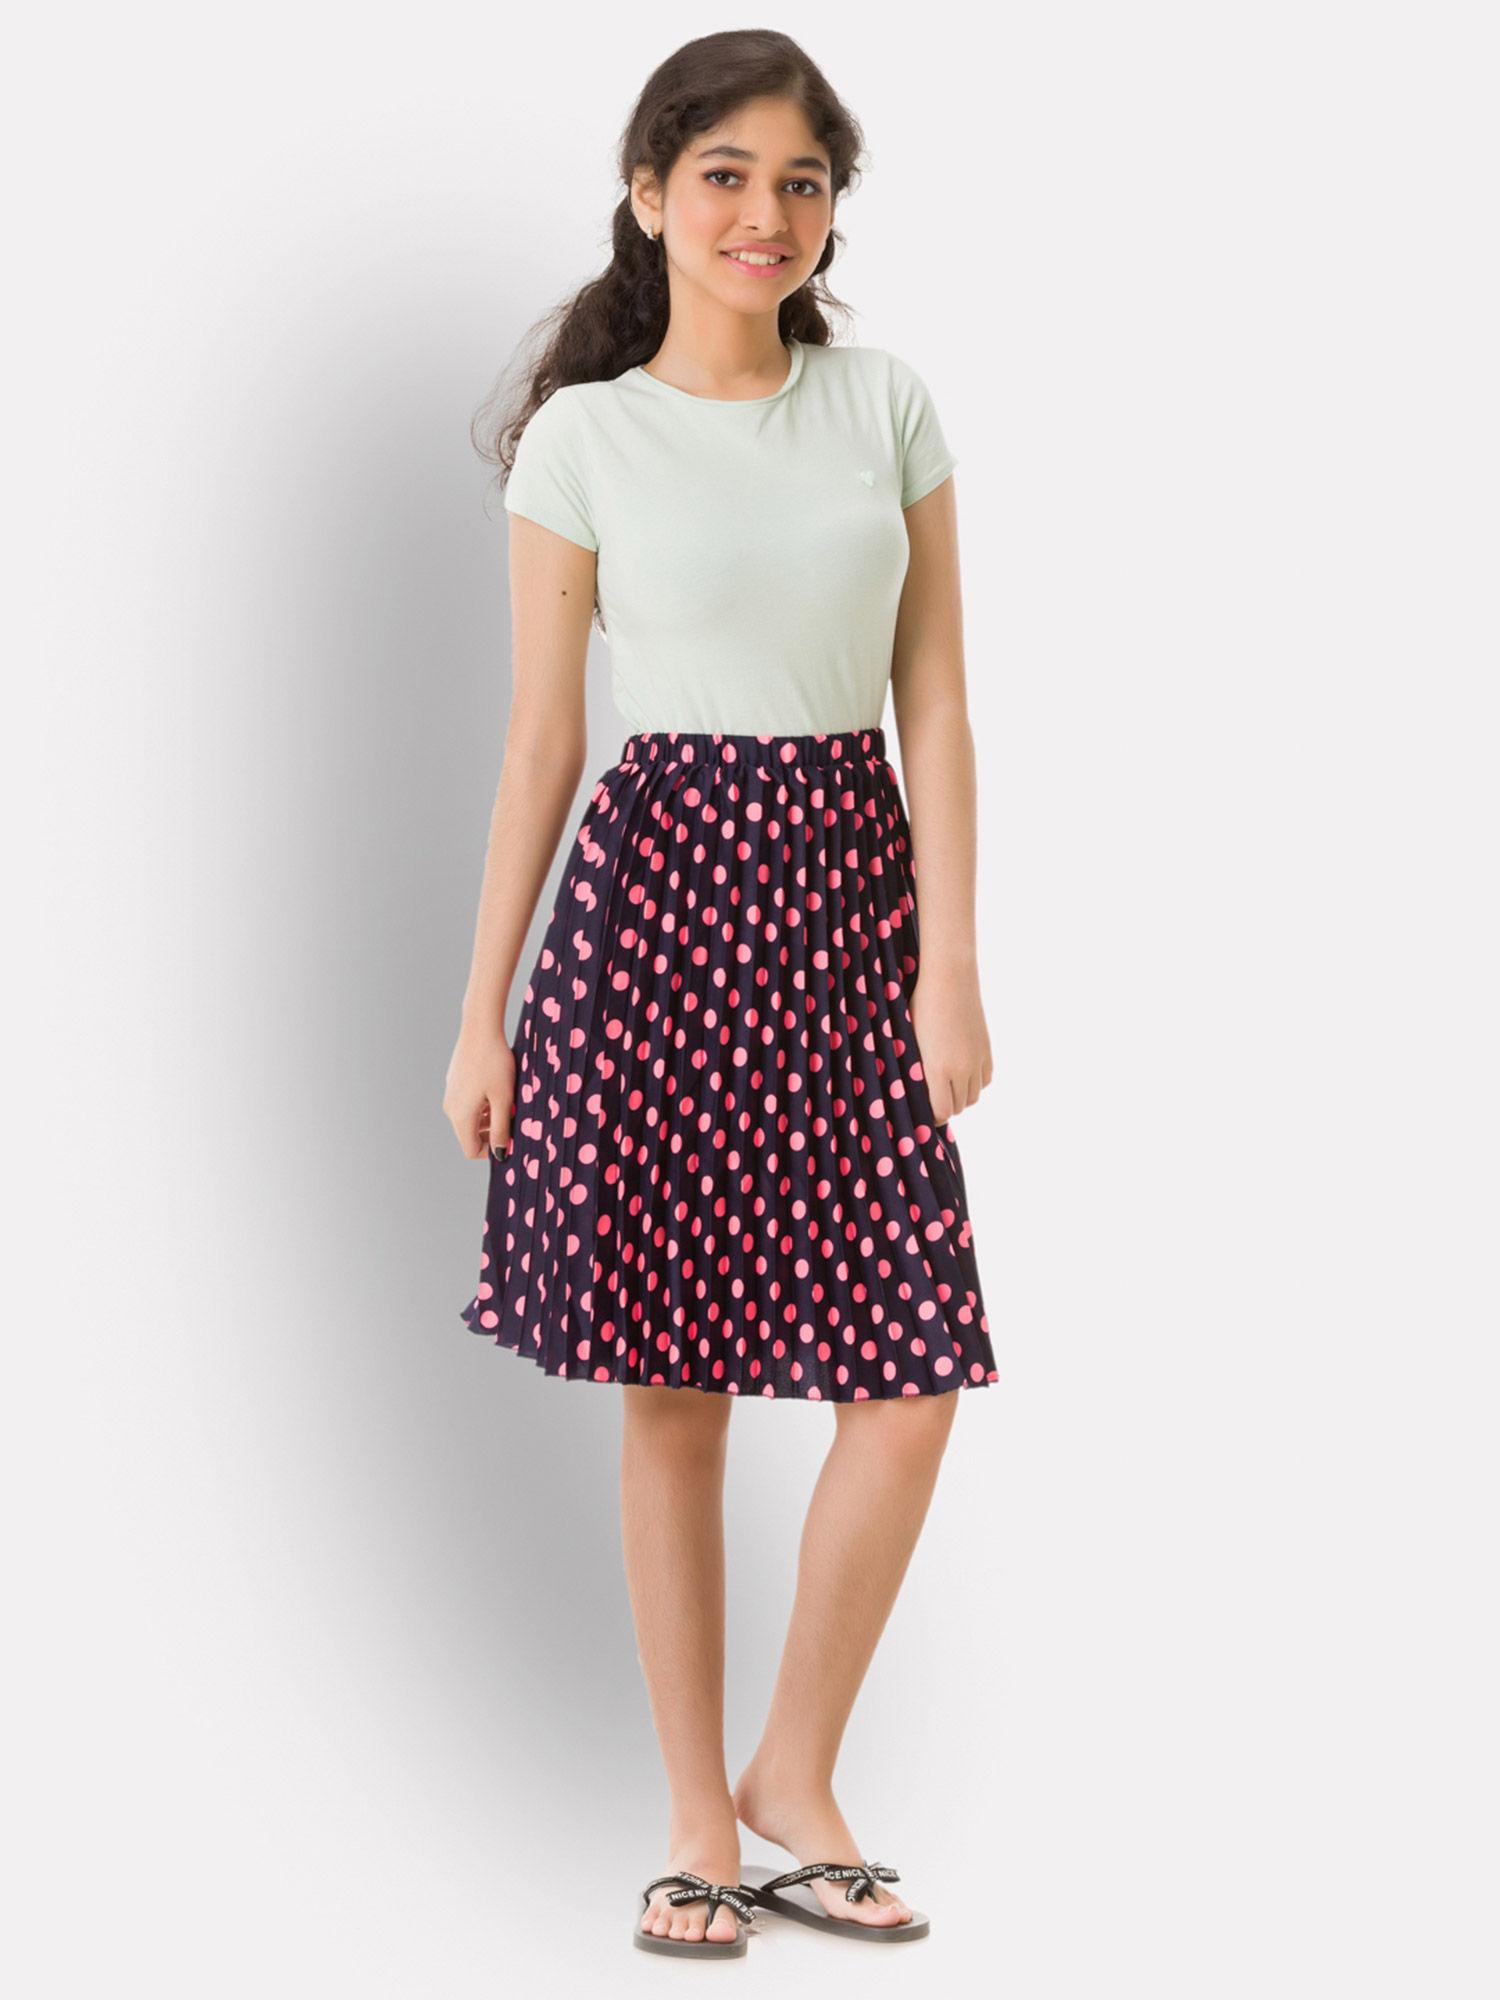 girls-black-polka-dots-skirt